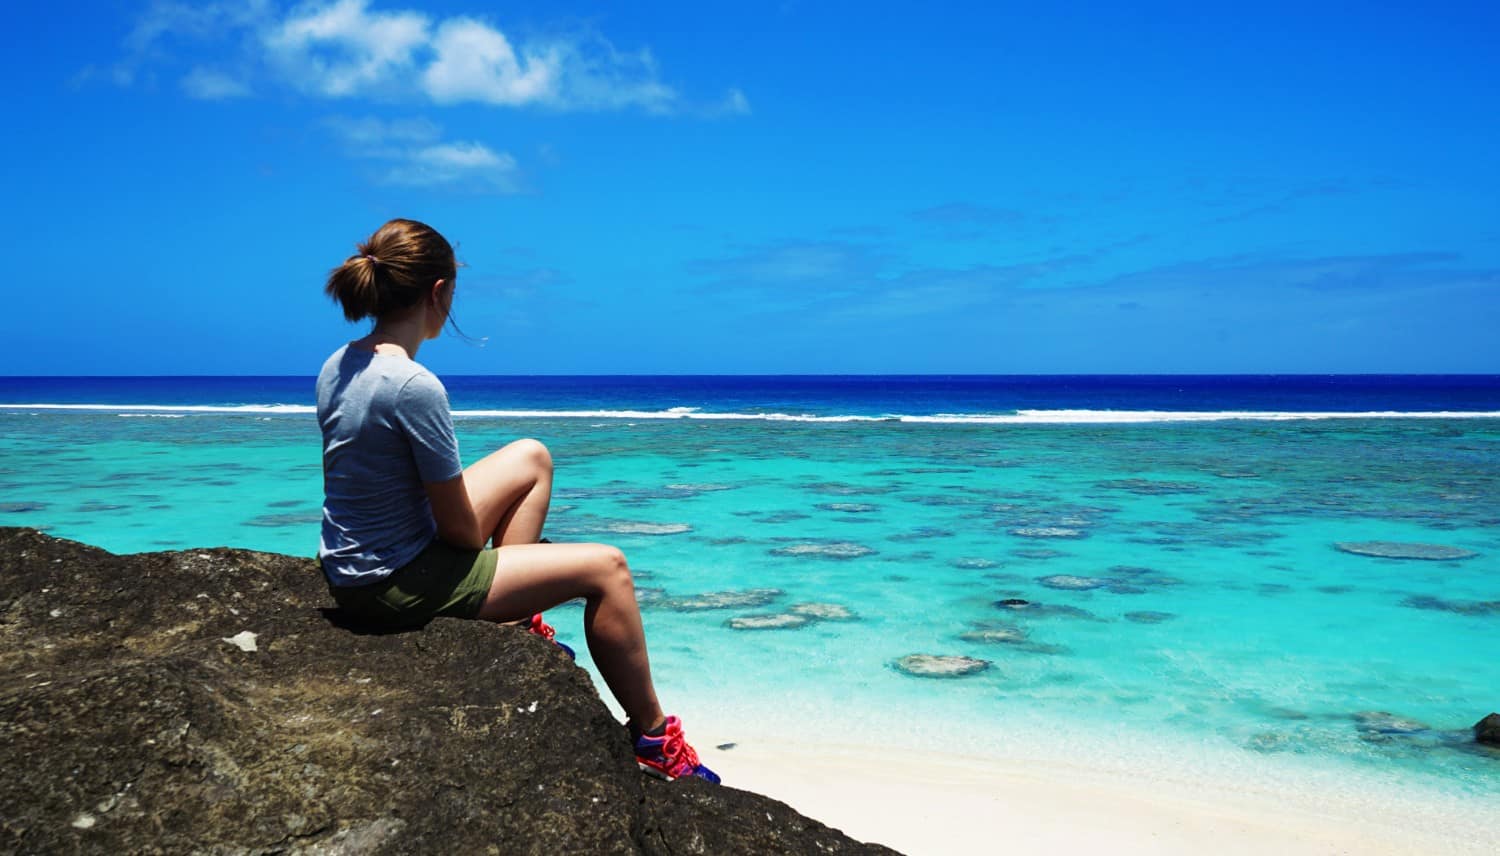 Lauren in Rarotonga, the Cook Islands